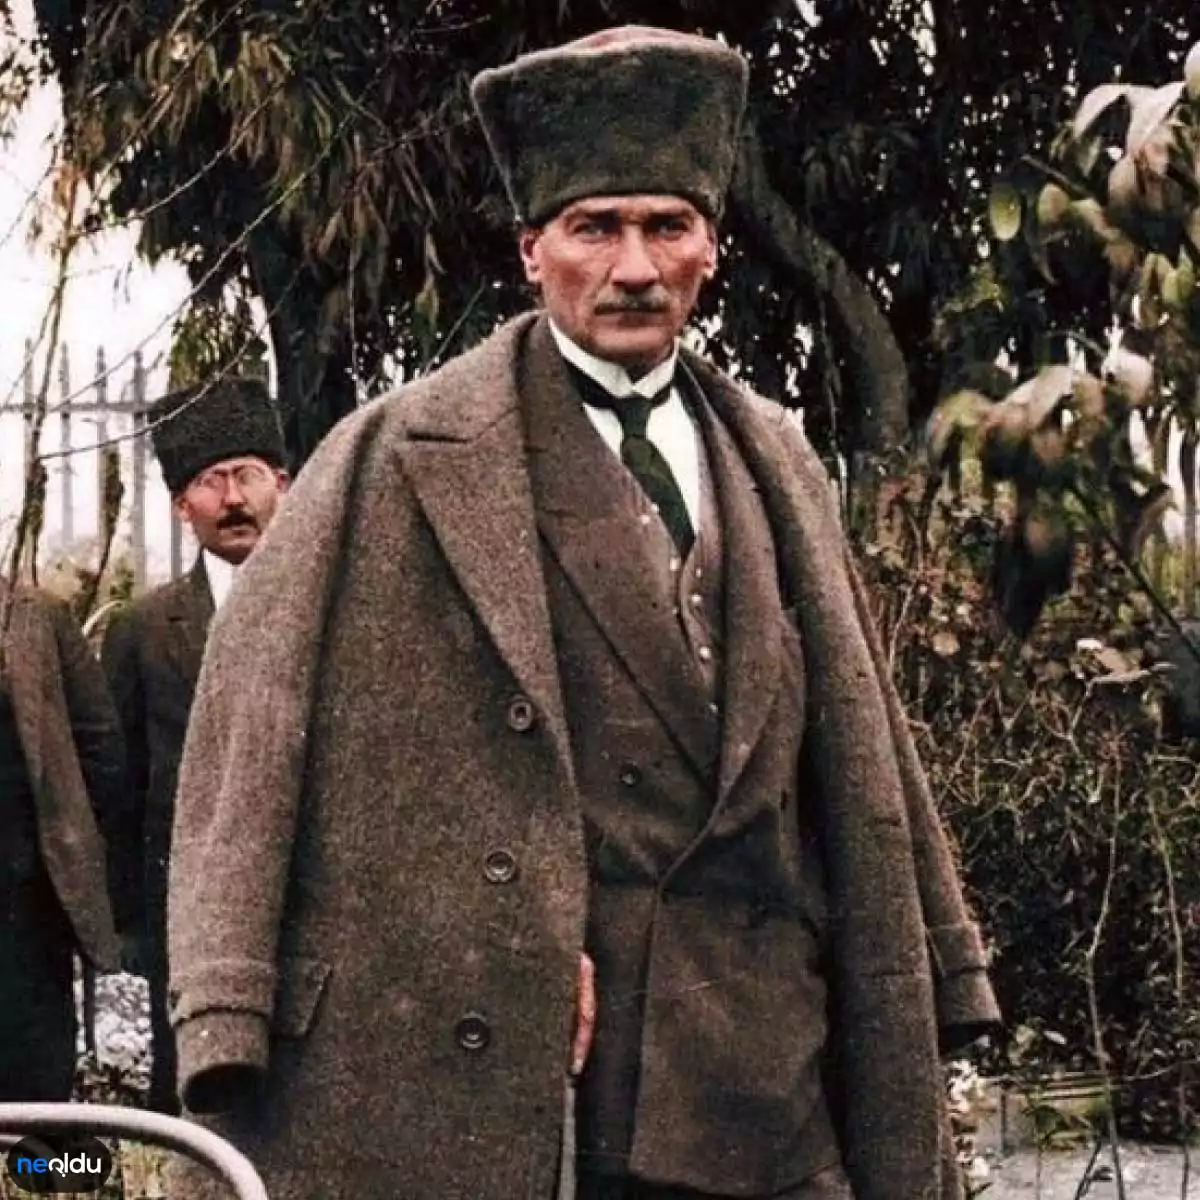 Rüyada Atatürk Görmek